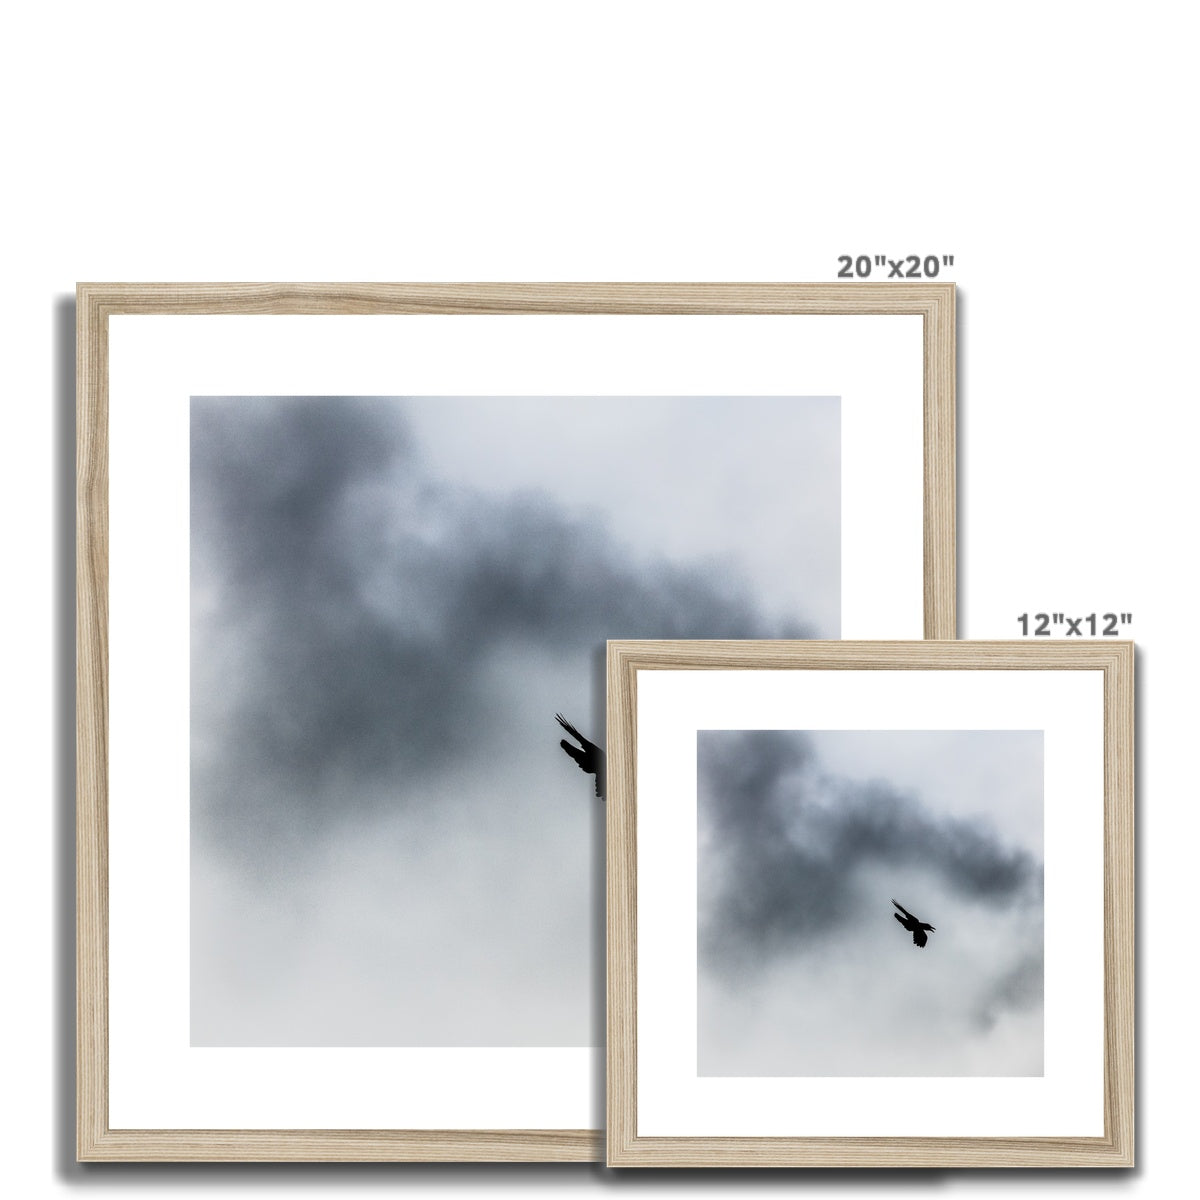 Storm Raven 3 Framed & Mounted Print